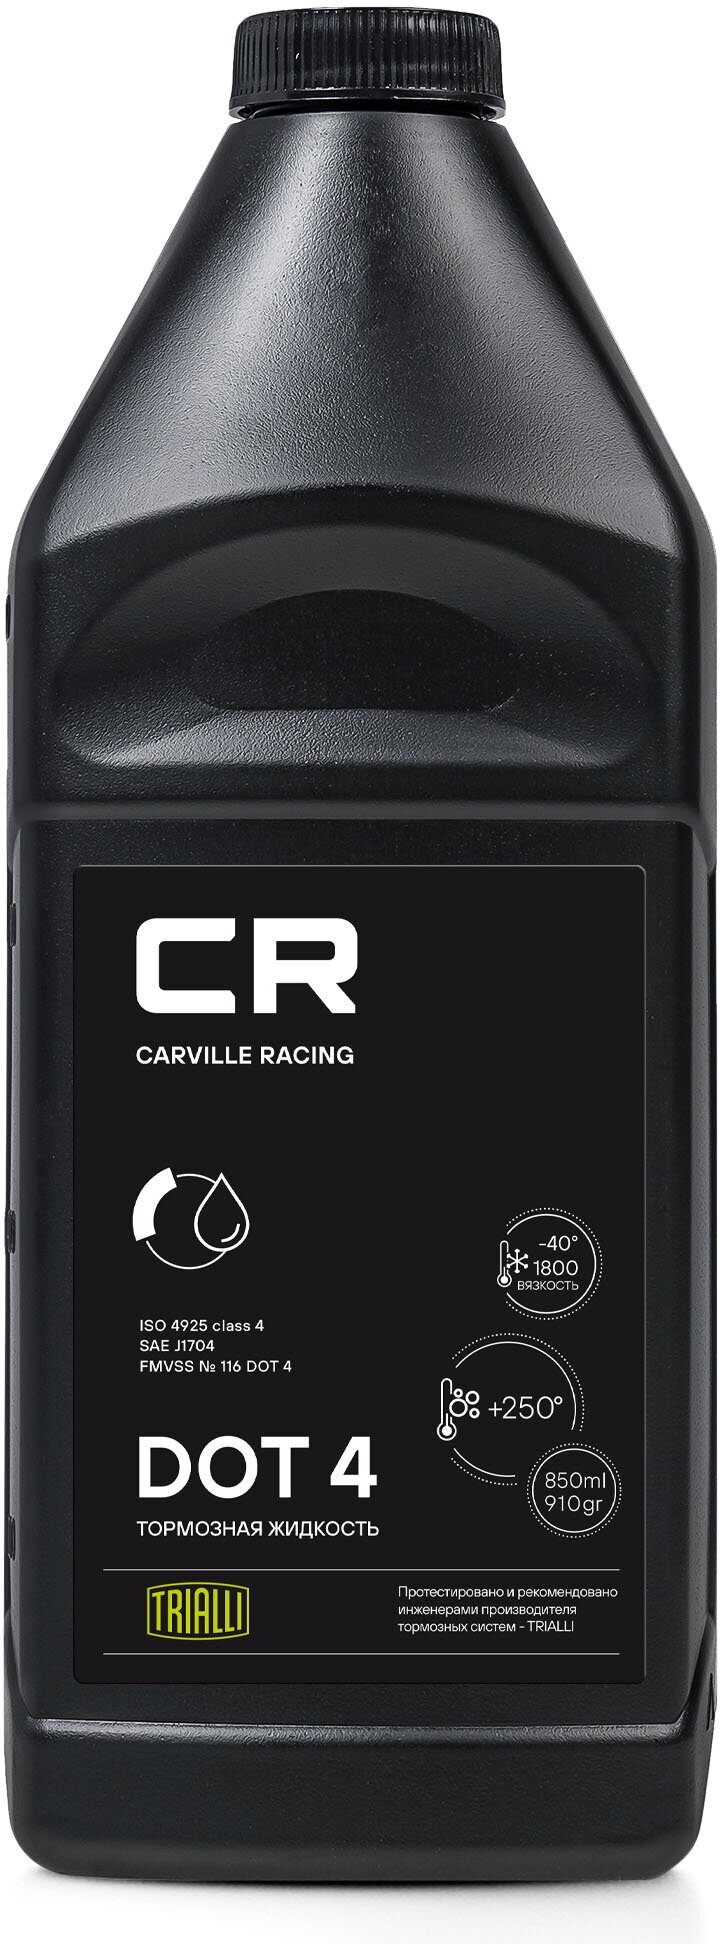 Тормозная жидкость DOT 4, 850мл/910гр L4250006 Carville Racing